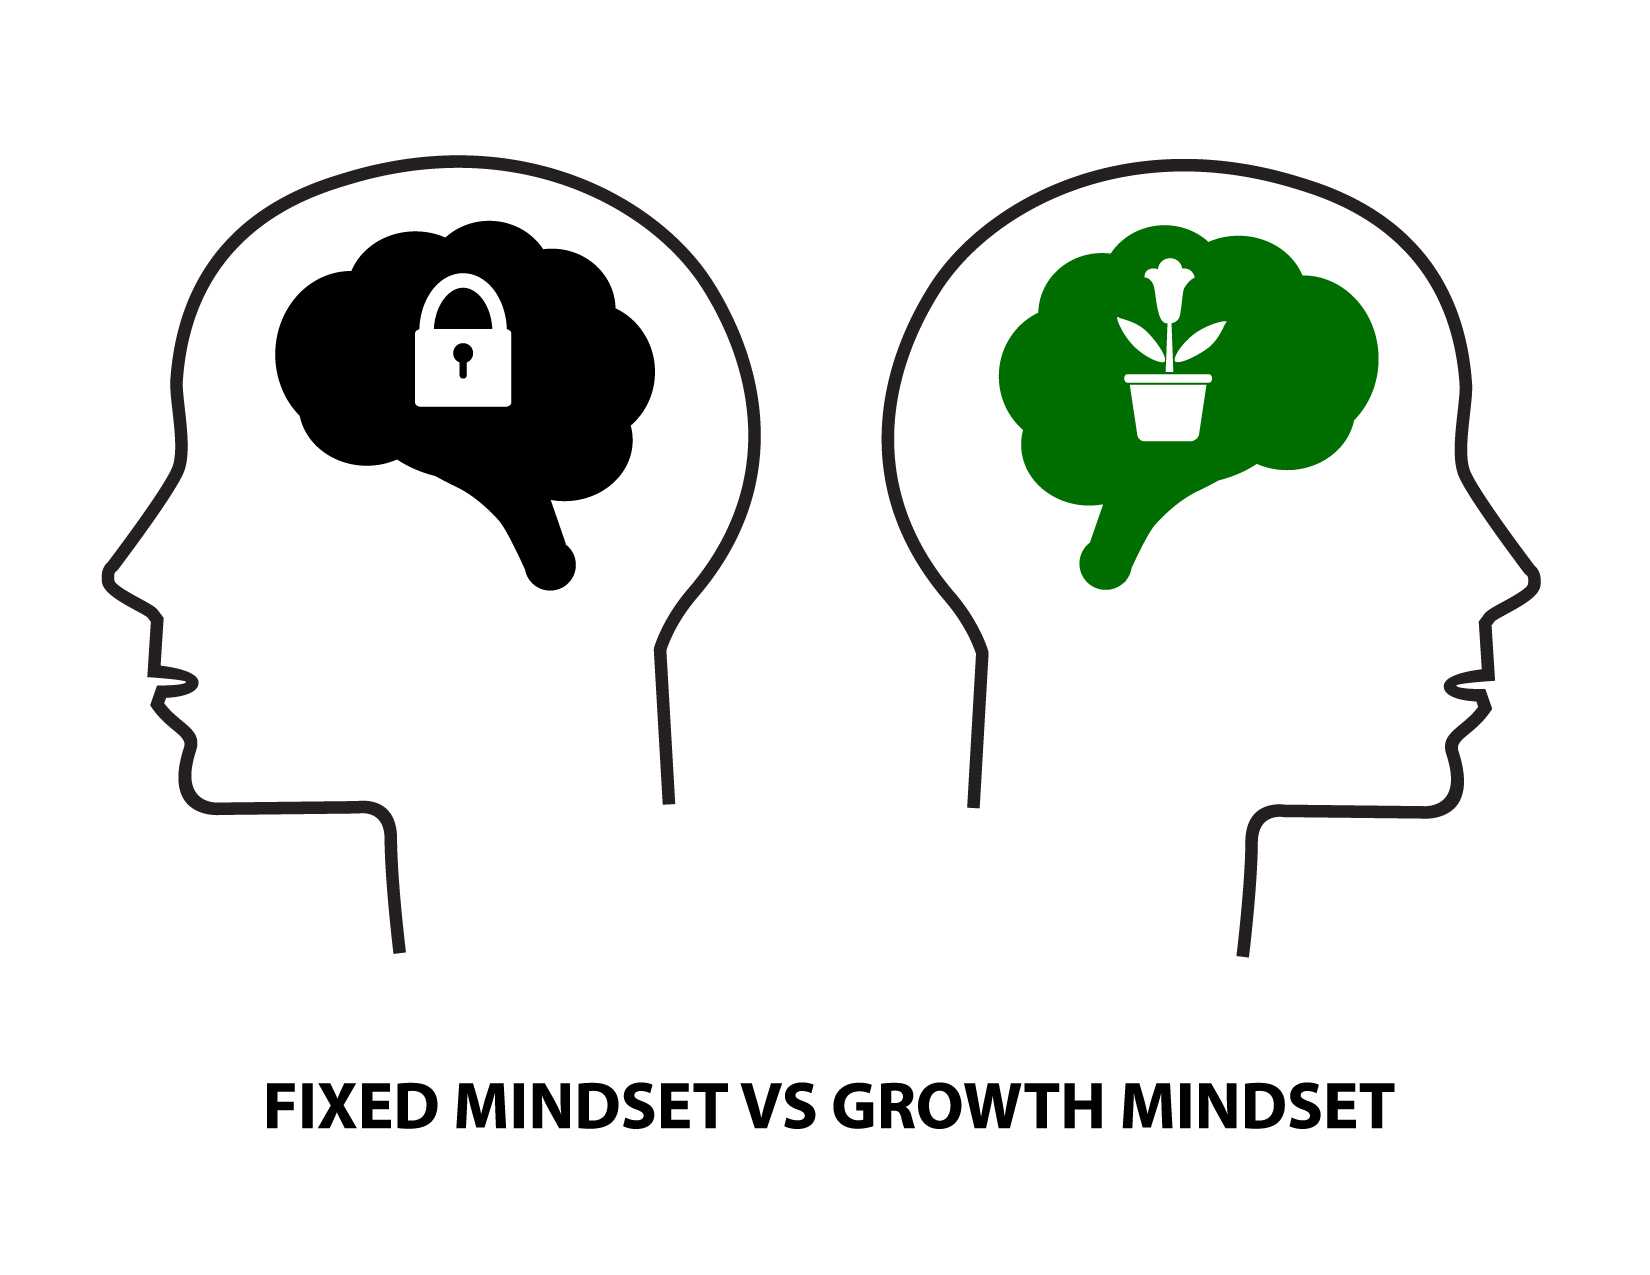 การพัฒนากรอบความคิดแบบเติบโต (Growth mindset): หลักฐานจากการทดลองสุ่มแบบมีกลุ่มควบคุม (RCT)